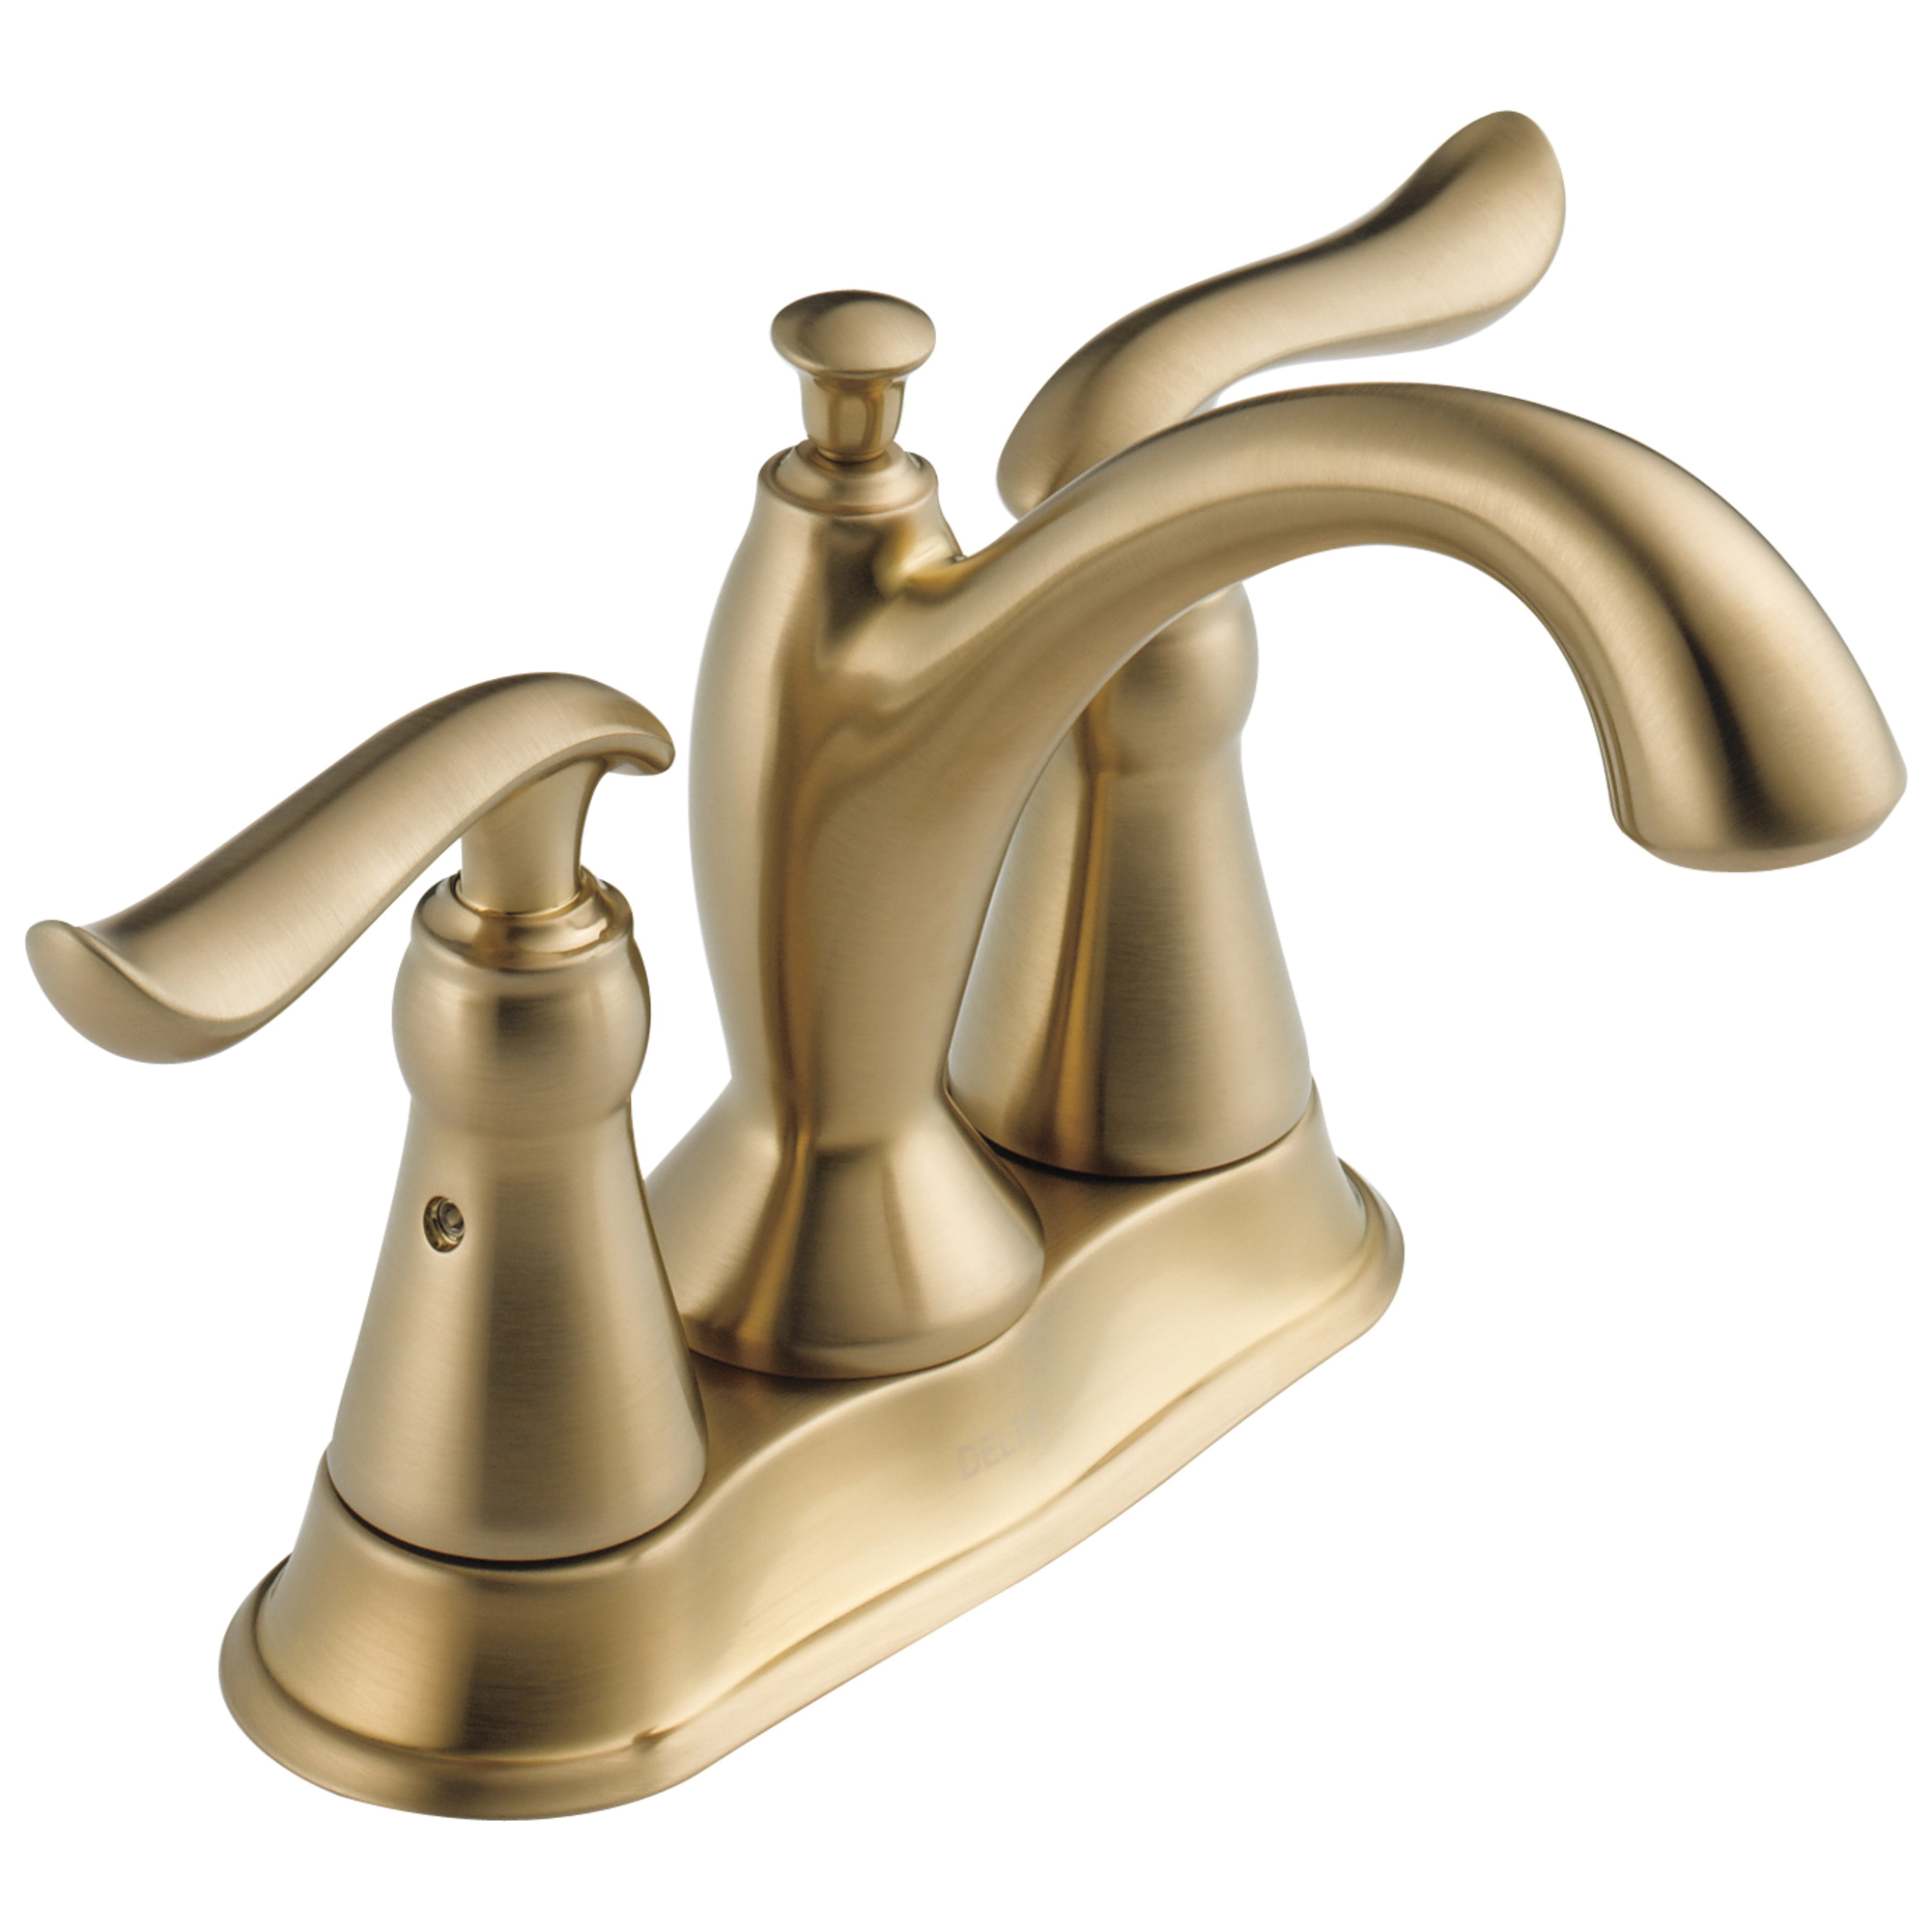 DELTA® 2594-CZMPU-DST Centerset Lavatory Faucet, Linden™, Champagne Bronze, 2 Handles, Metal Pop-Up Drain, 1.2 gpm